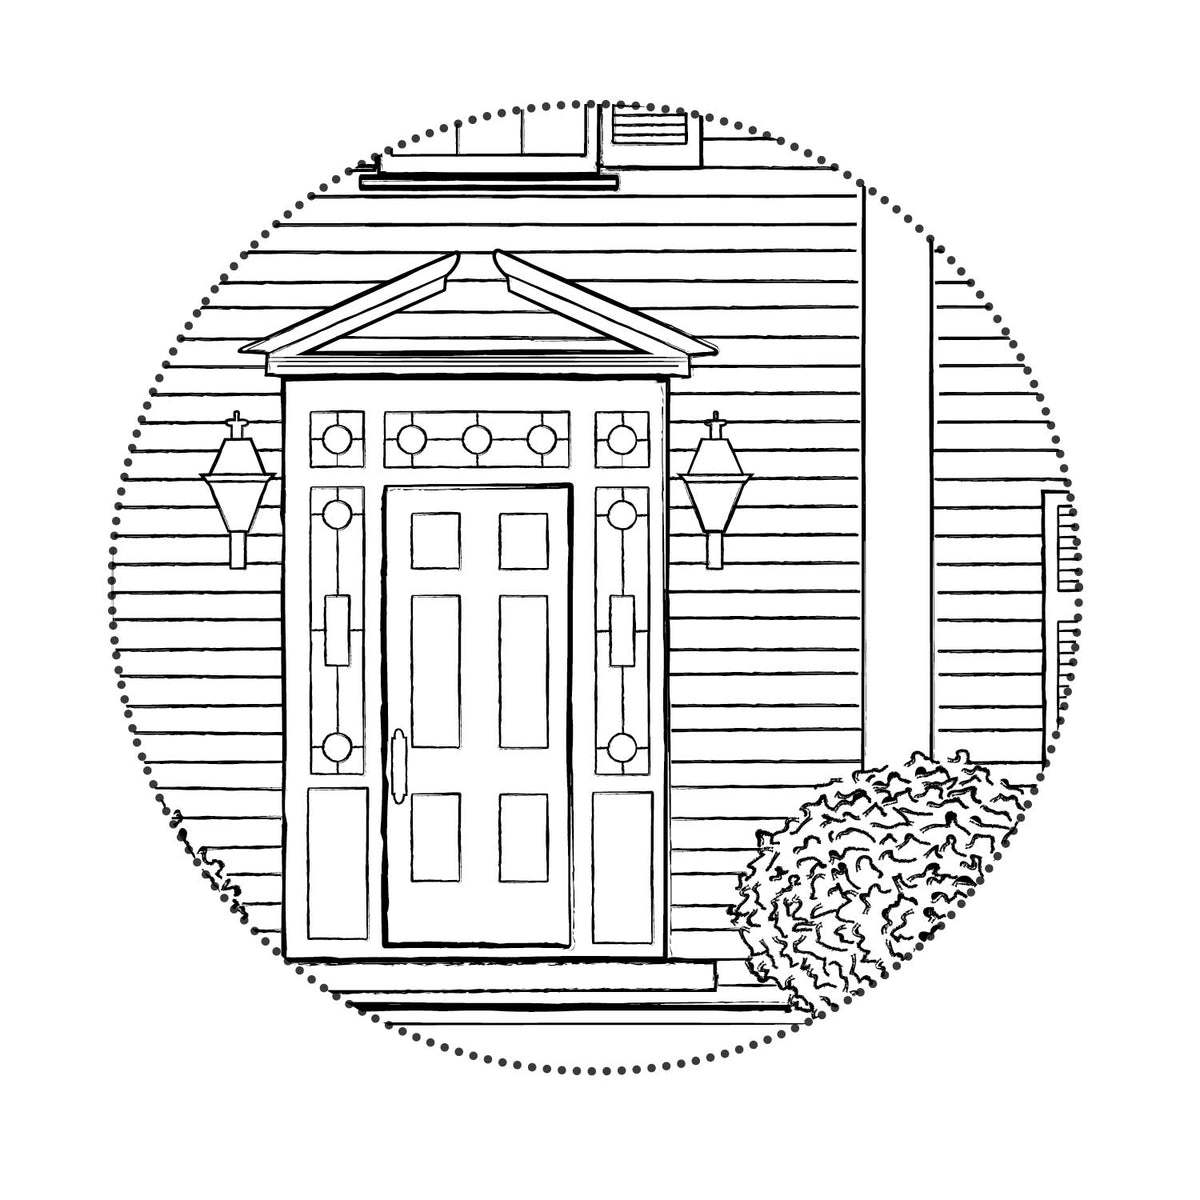 The Fearrington House Inn Sketch Digital File